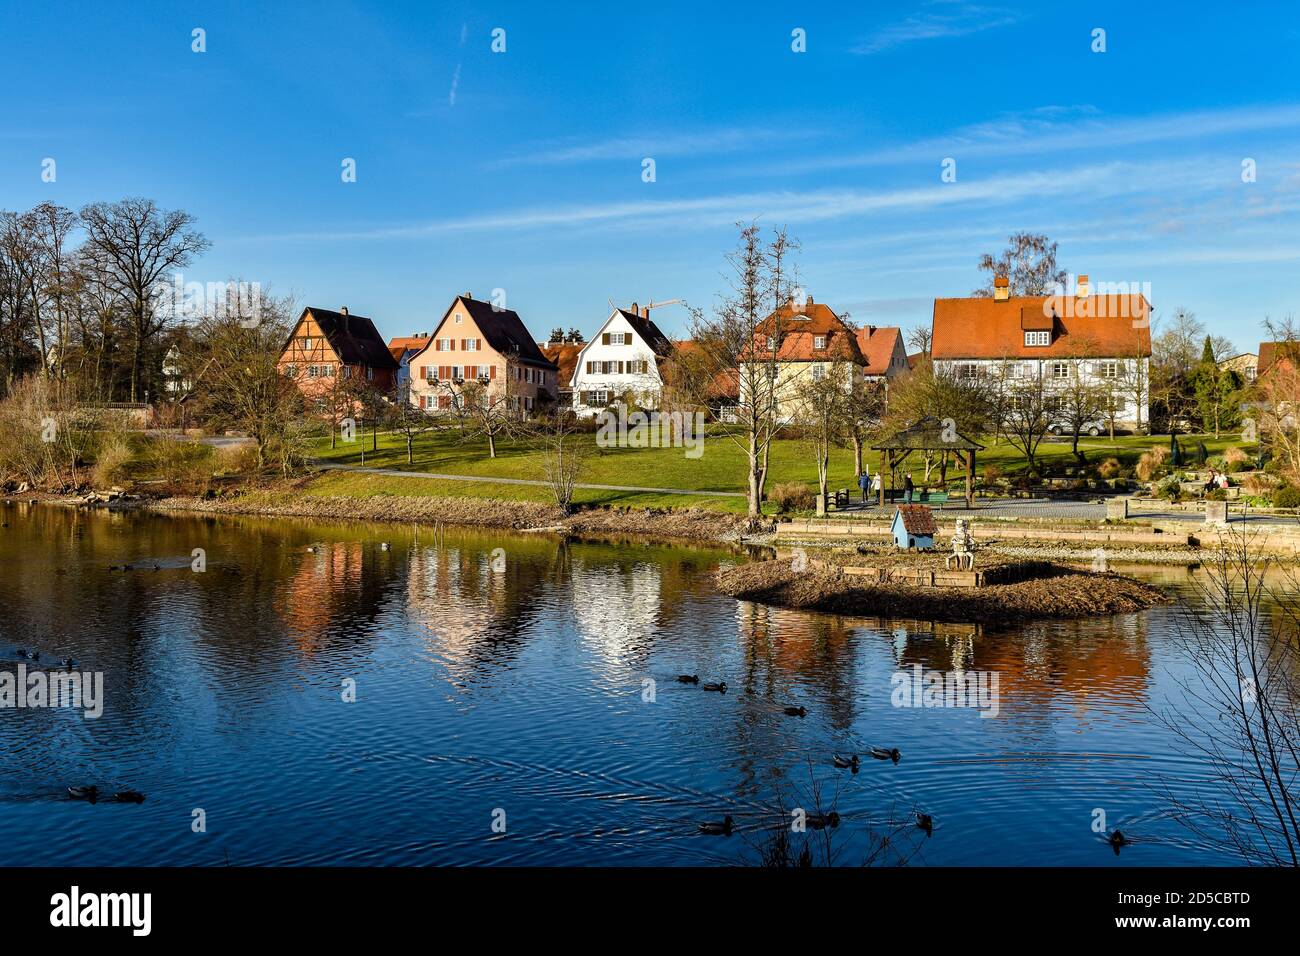 Dinkelsbühl à christmass Time. Maison à colombages colorée, maisons, lac, ciel bleu. Bade-Wurtemberg, Allemagne. Banque D'Images